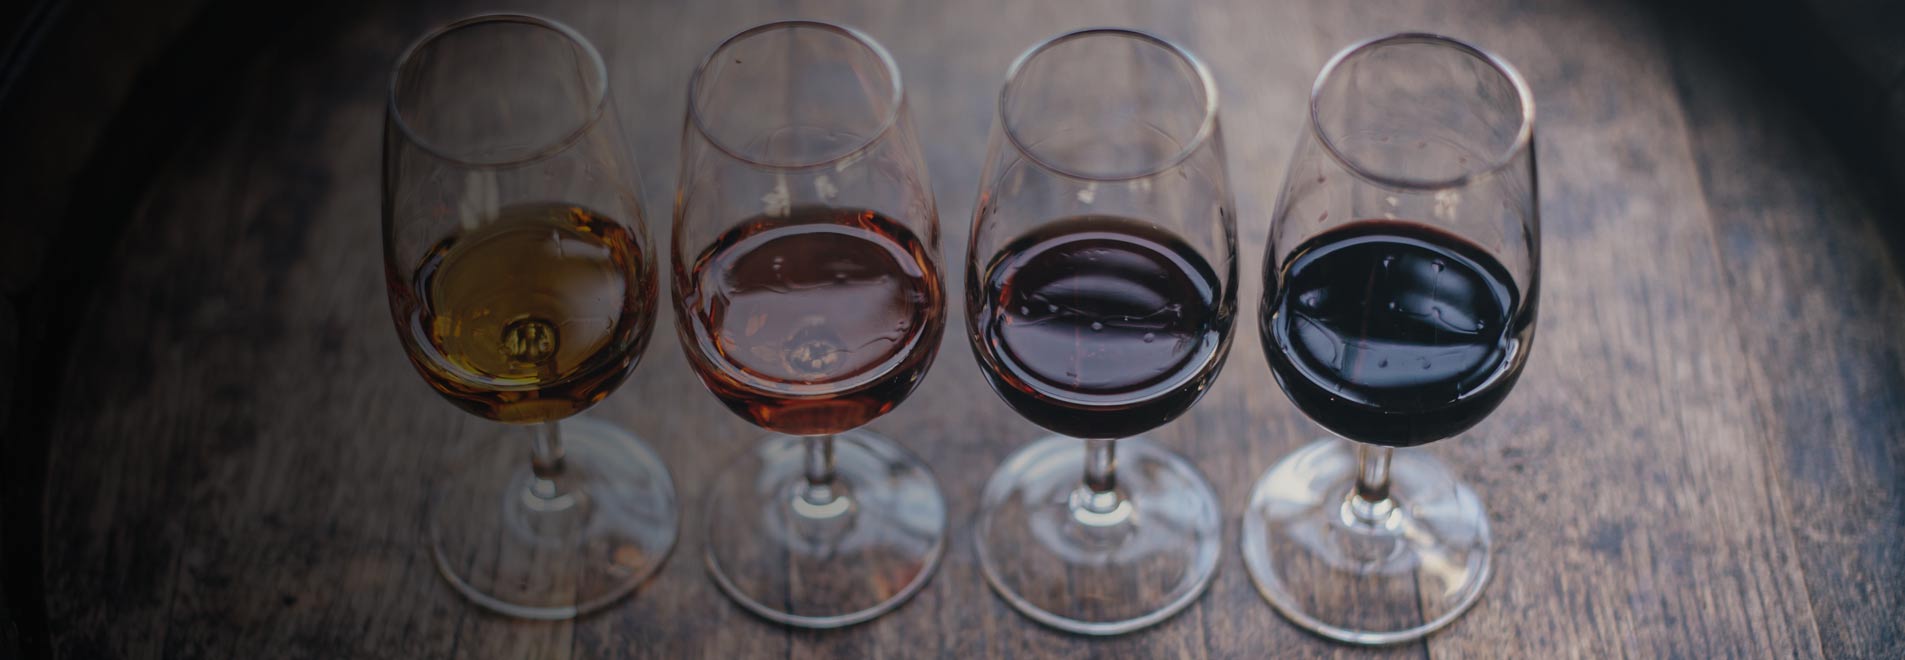 Tipos de vinos de Jerez utilizados para el envejecimiento del brandy